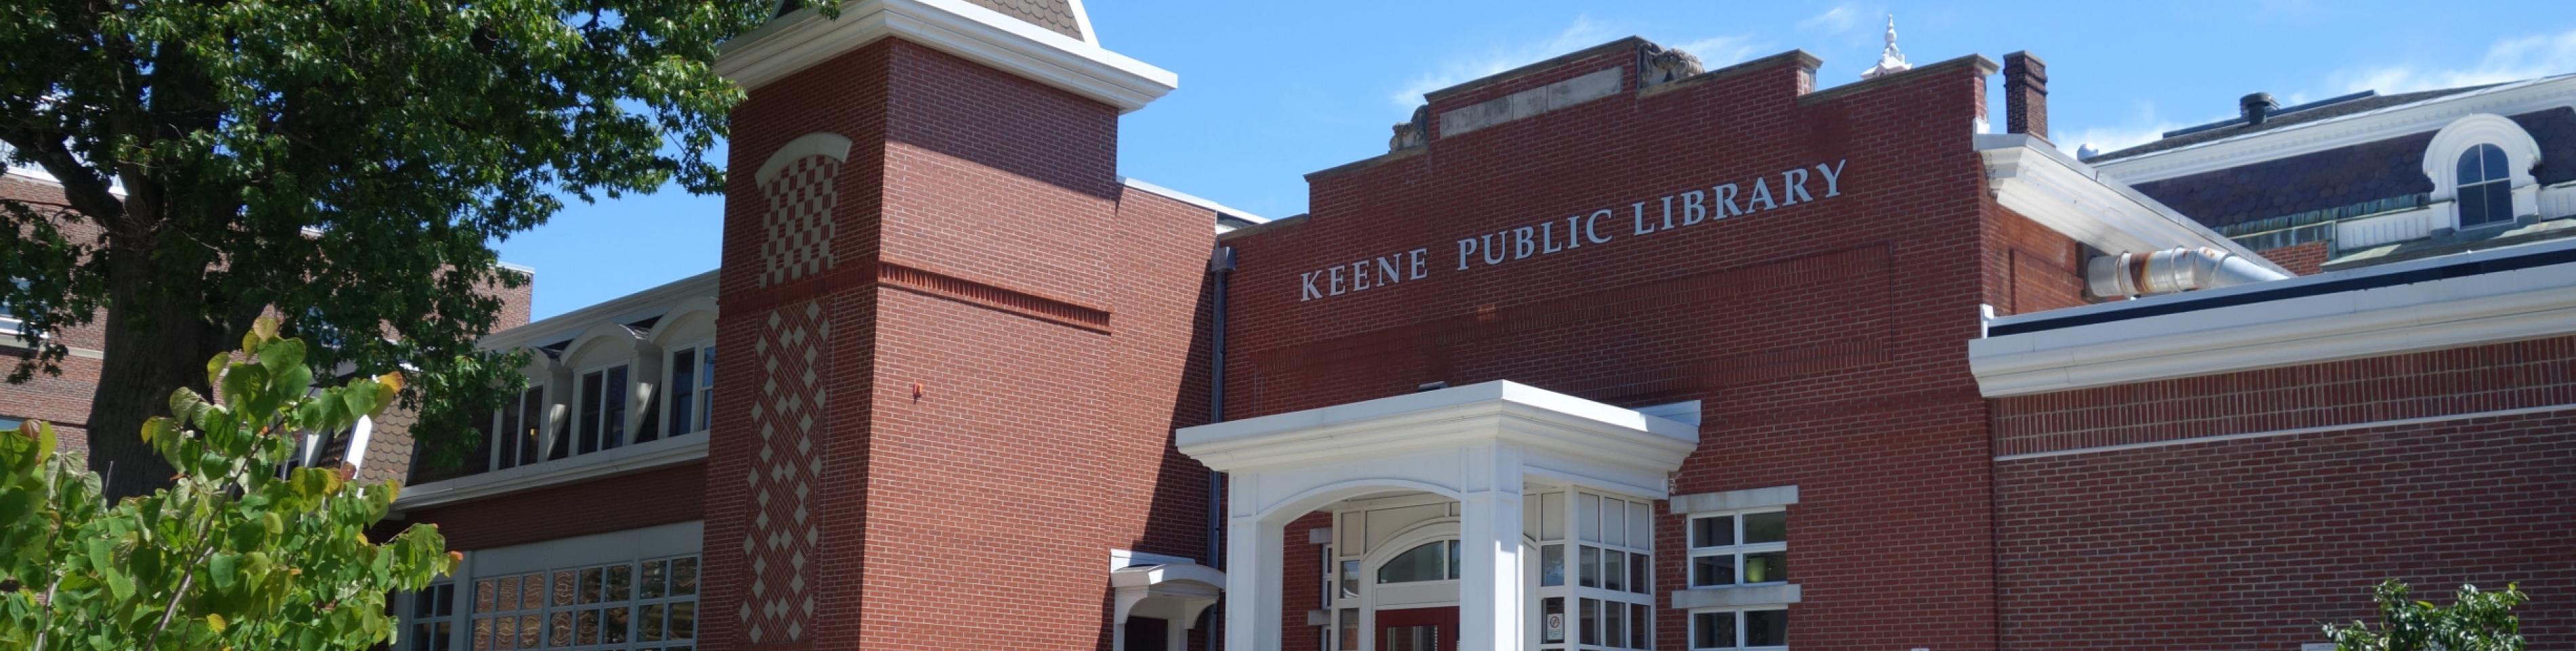 Keene Public Library | City of Keene